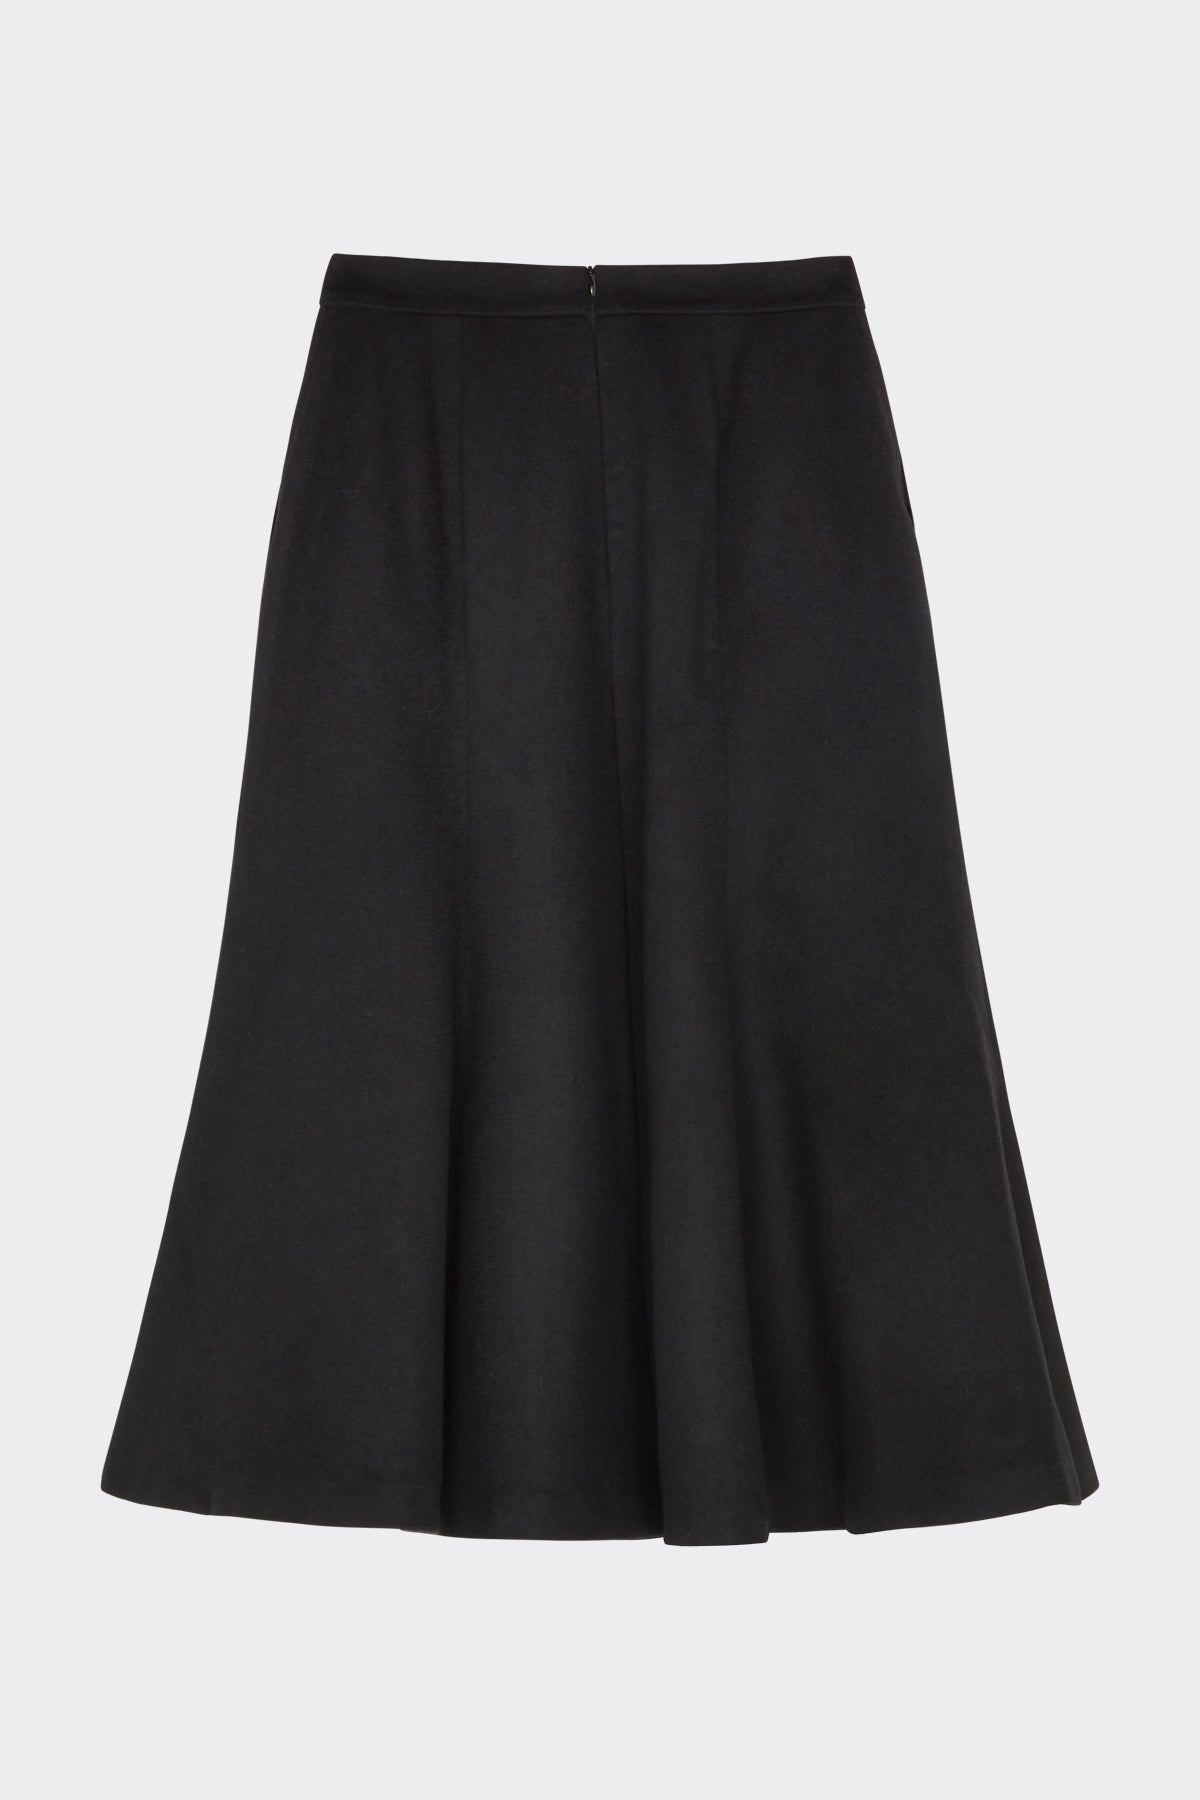 Hepworth Skirt in Black| Noon by Noor